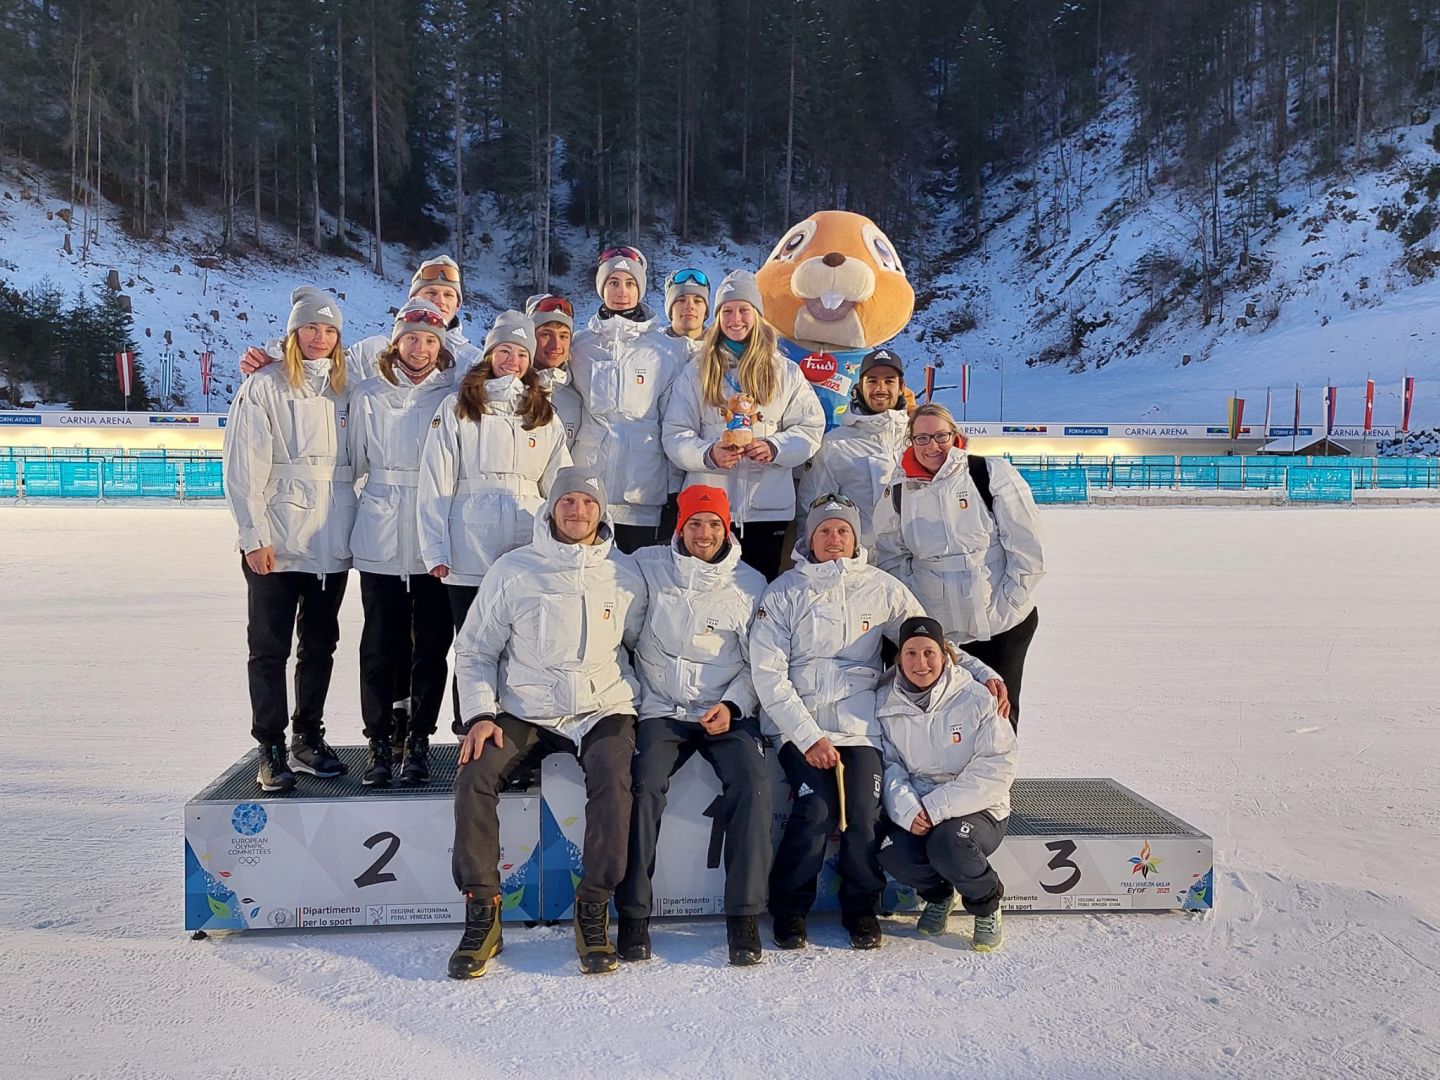 Ein Teamfoto des deutschen Teams auf dem Siegerpodest gemeinsam mit dem Maskottchen des Festivals